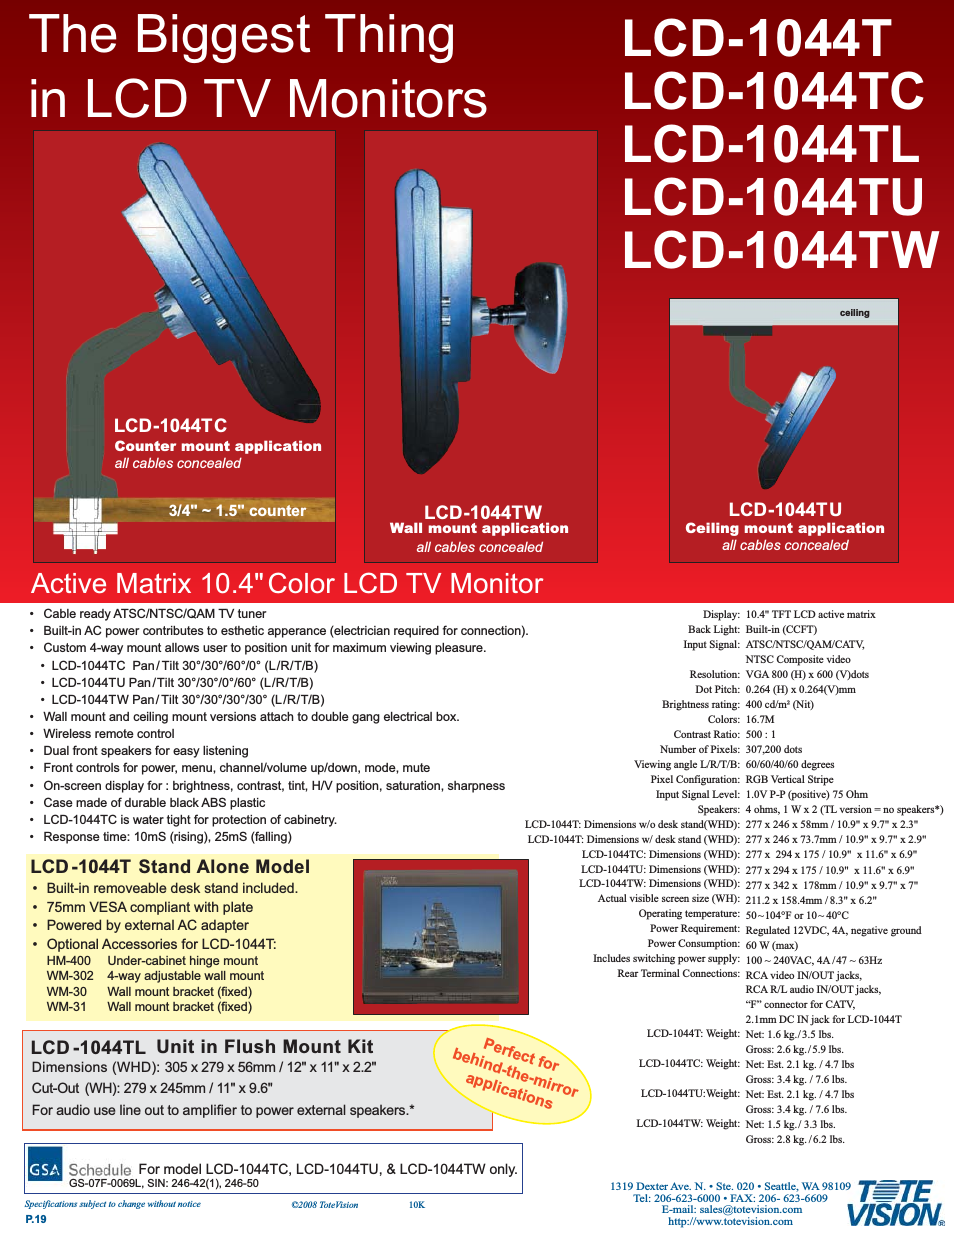 LCD-1044TL